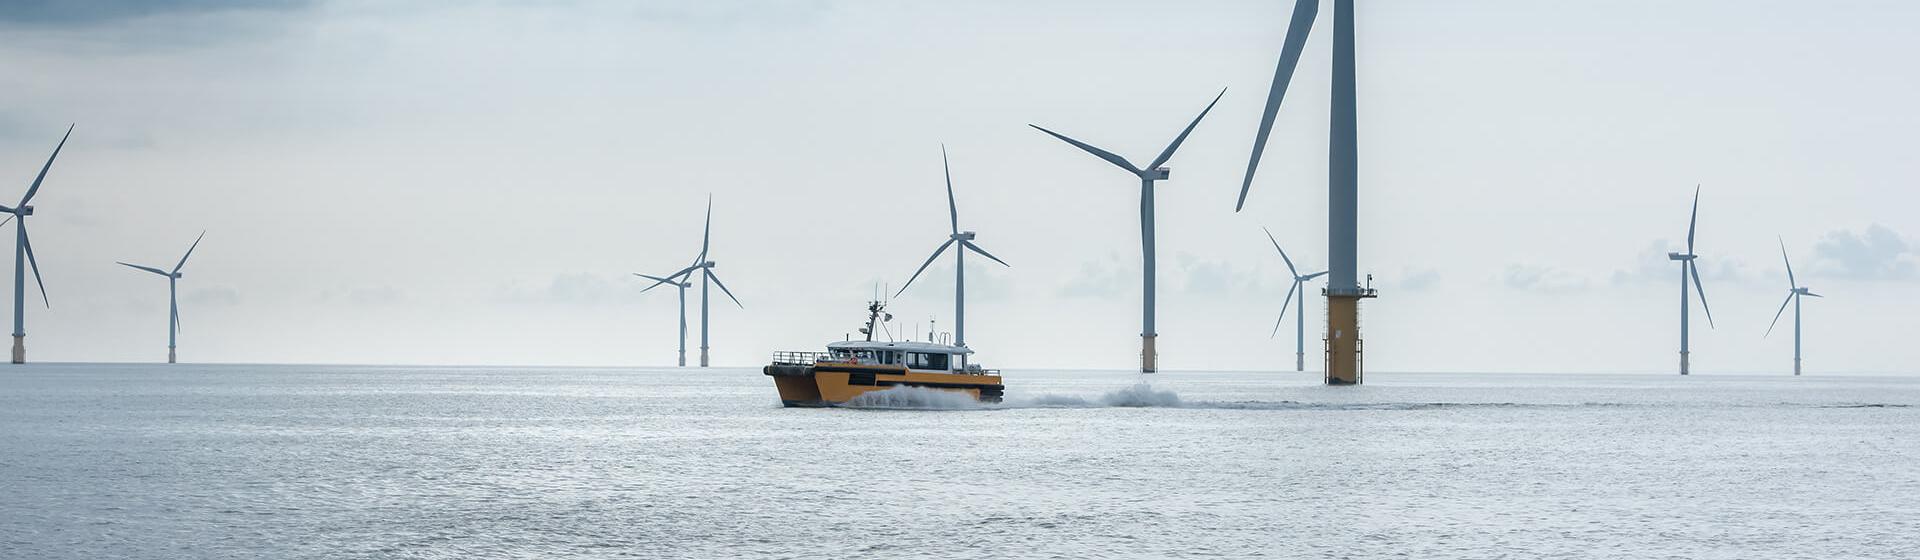 洋上風力発電施設の画像。1隻のサービス船がタービンの間を速度を上げて航行し、はっきりとした航跡を残している。